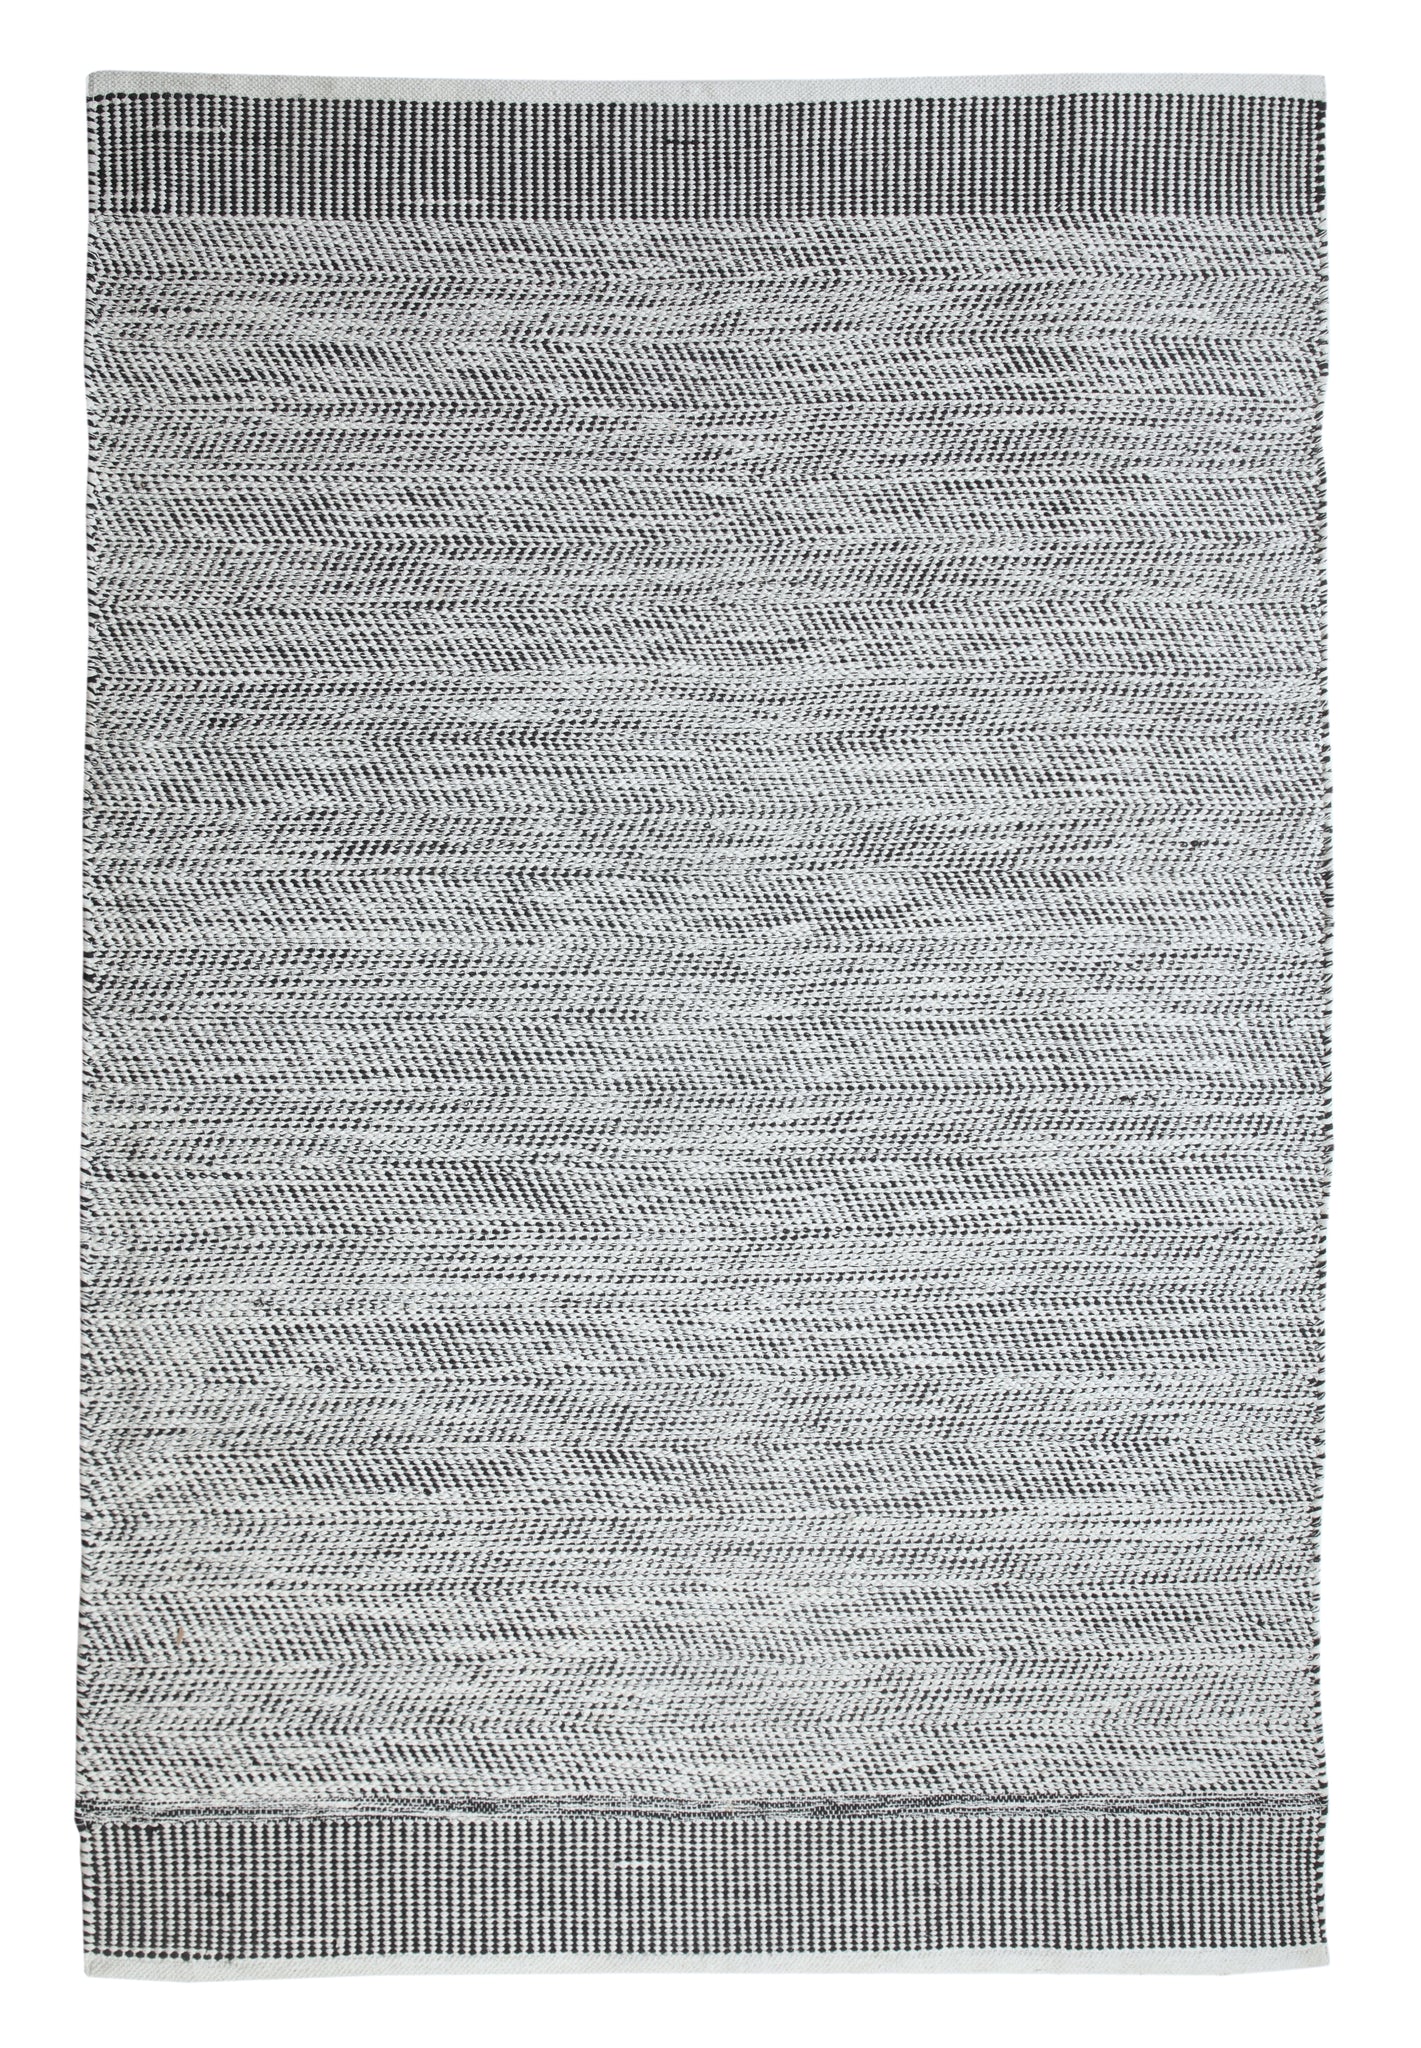 Handgewebter Teppich aus Baumwolle waschbar